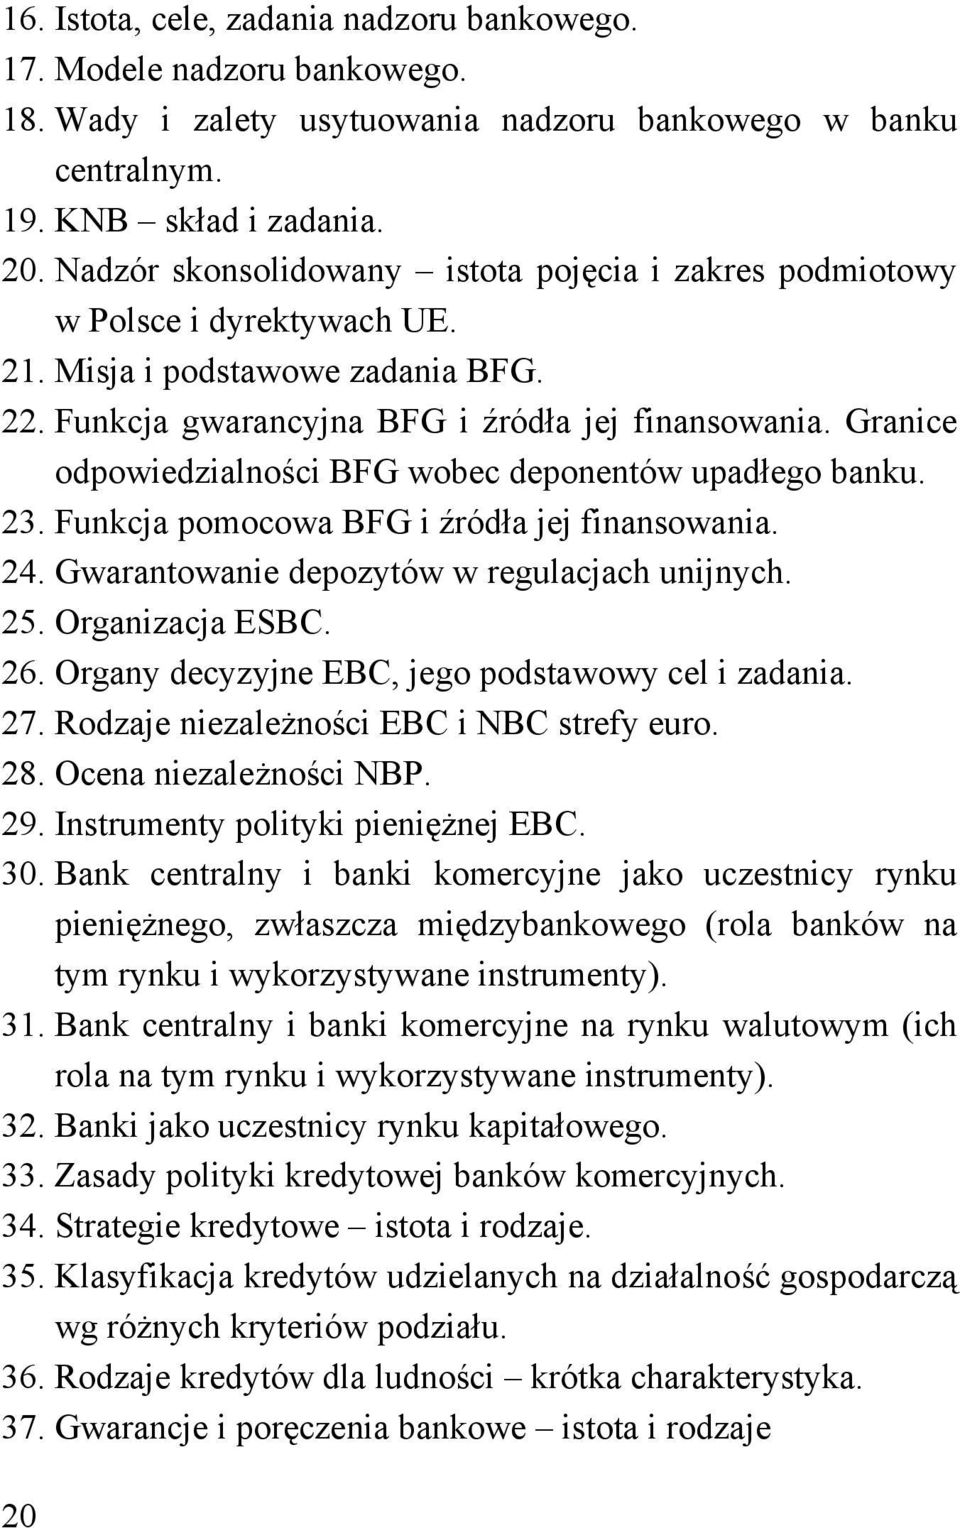 Granice odpowiedzialności BFG wobec deponentów upadłego banku. 23. Funkcja pomocowa BFG i źródła jej finansowania. 24. Gwarantowanie depozytów w regulacjach unijnych. 25. Organizacja ESBC. 26.